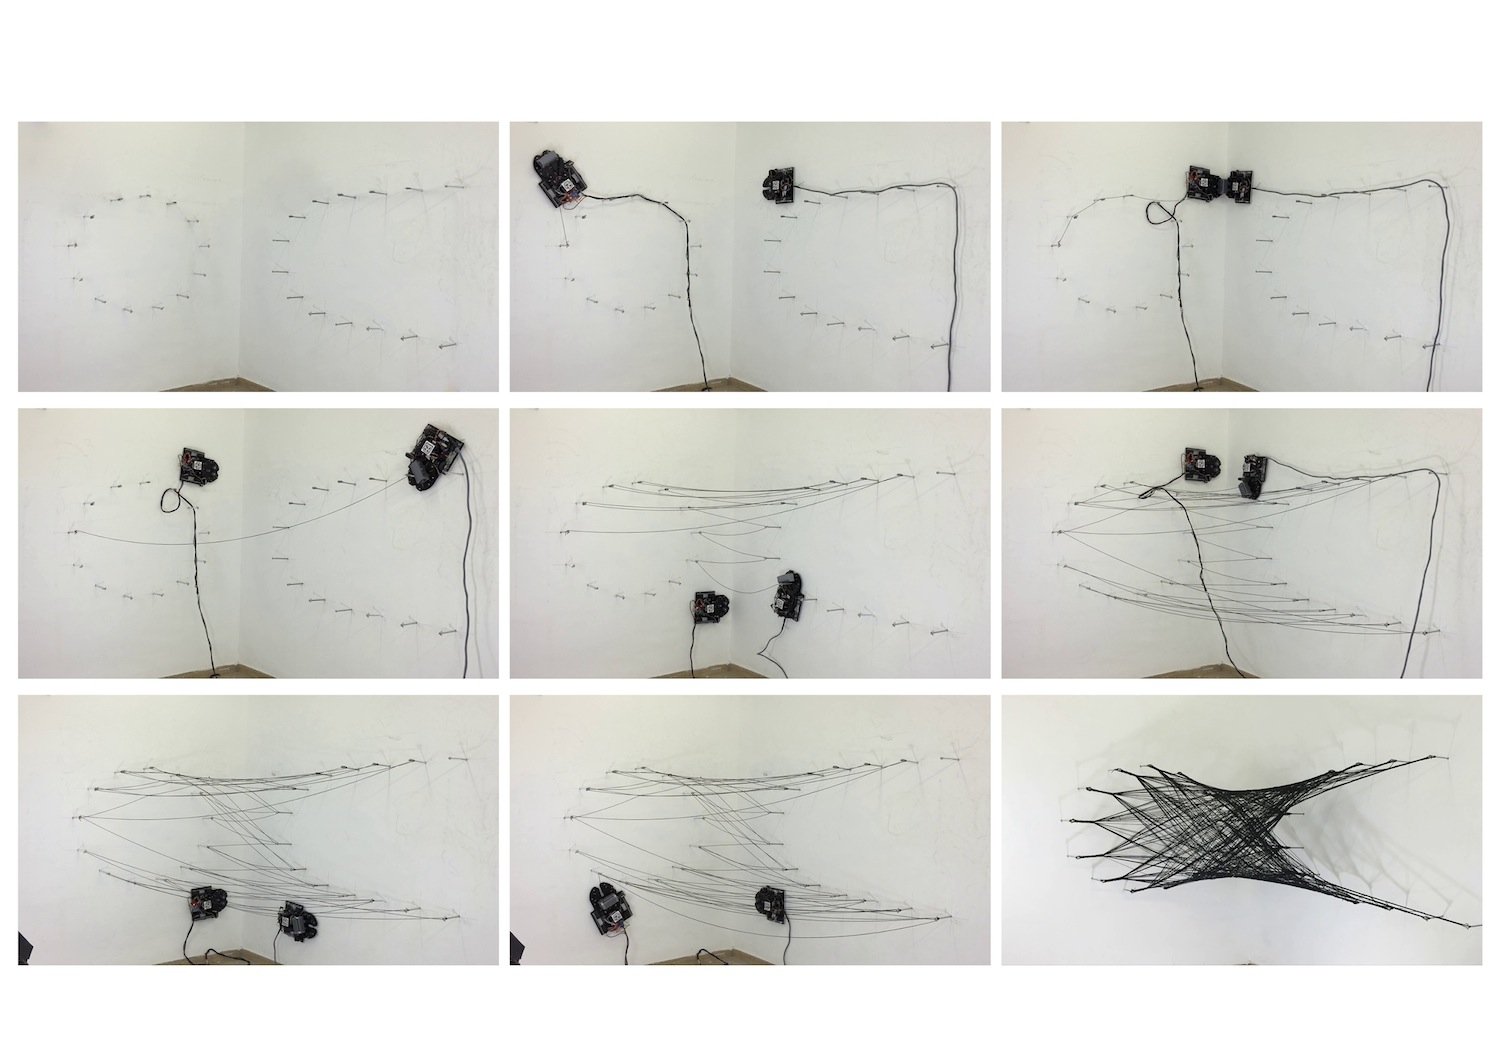 Arbeitsweise der Spinnen-Roboter: Sie kommunizieren miteinander und tauschen Karbonfasern aus. So entsteht ein filigranes Netz. 